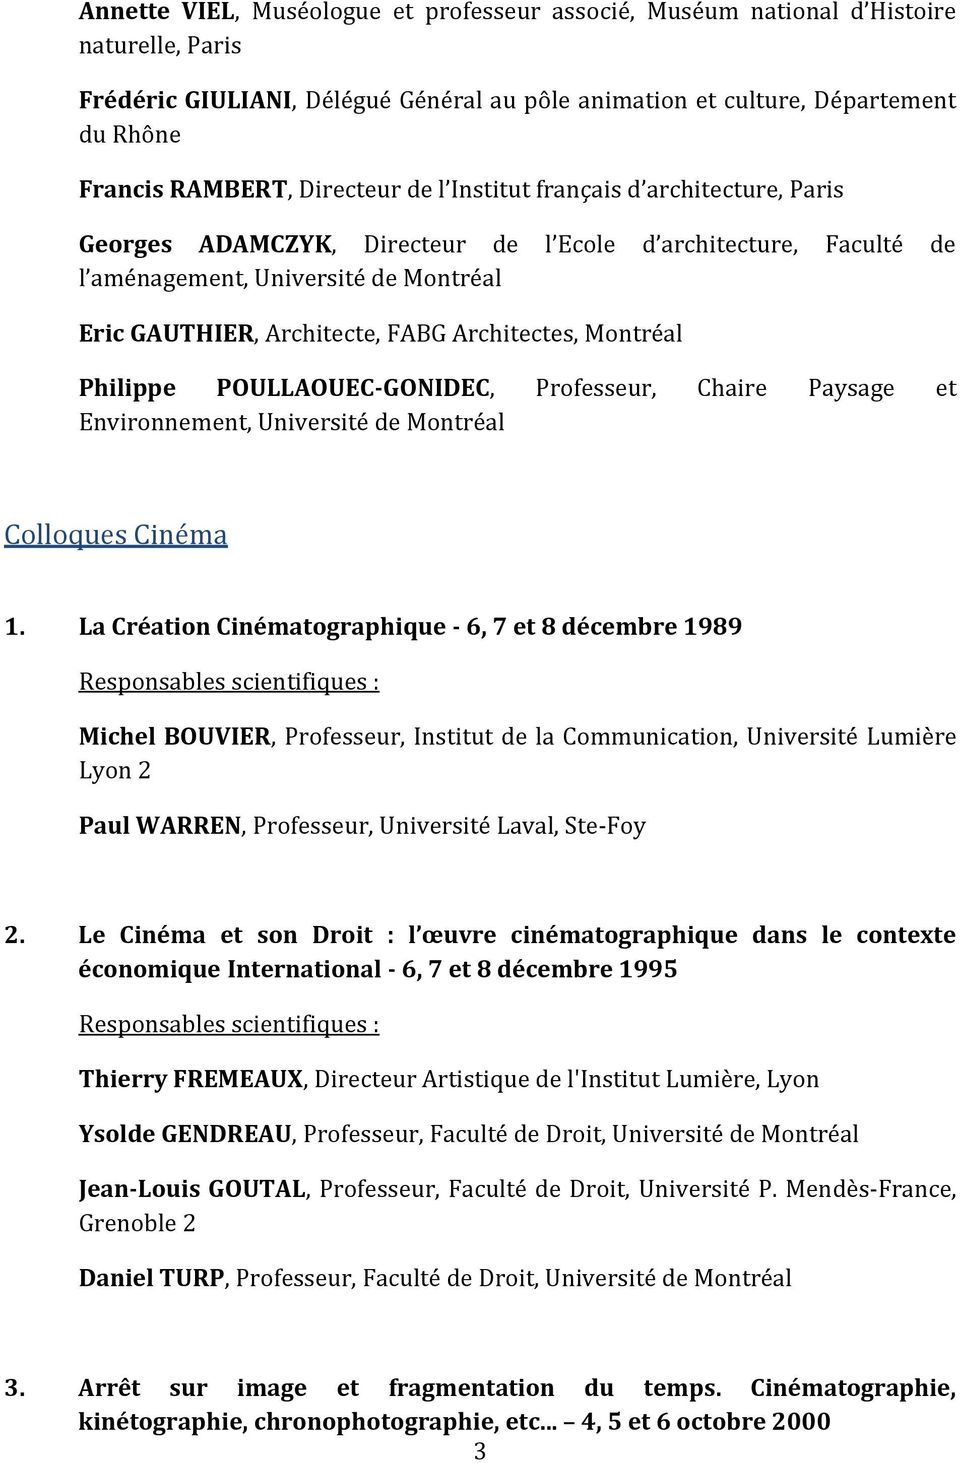 Philippe POULLAOUEC-GONIDEC, Professeur, Chaire Paysage et Environnement, Université de Colloques Cinéma 1.